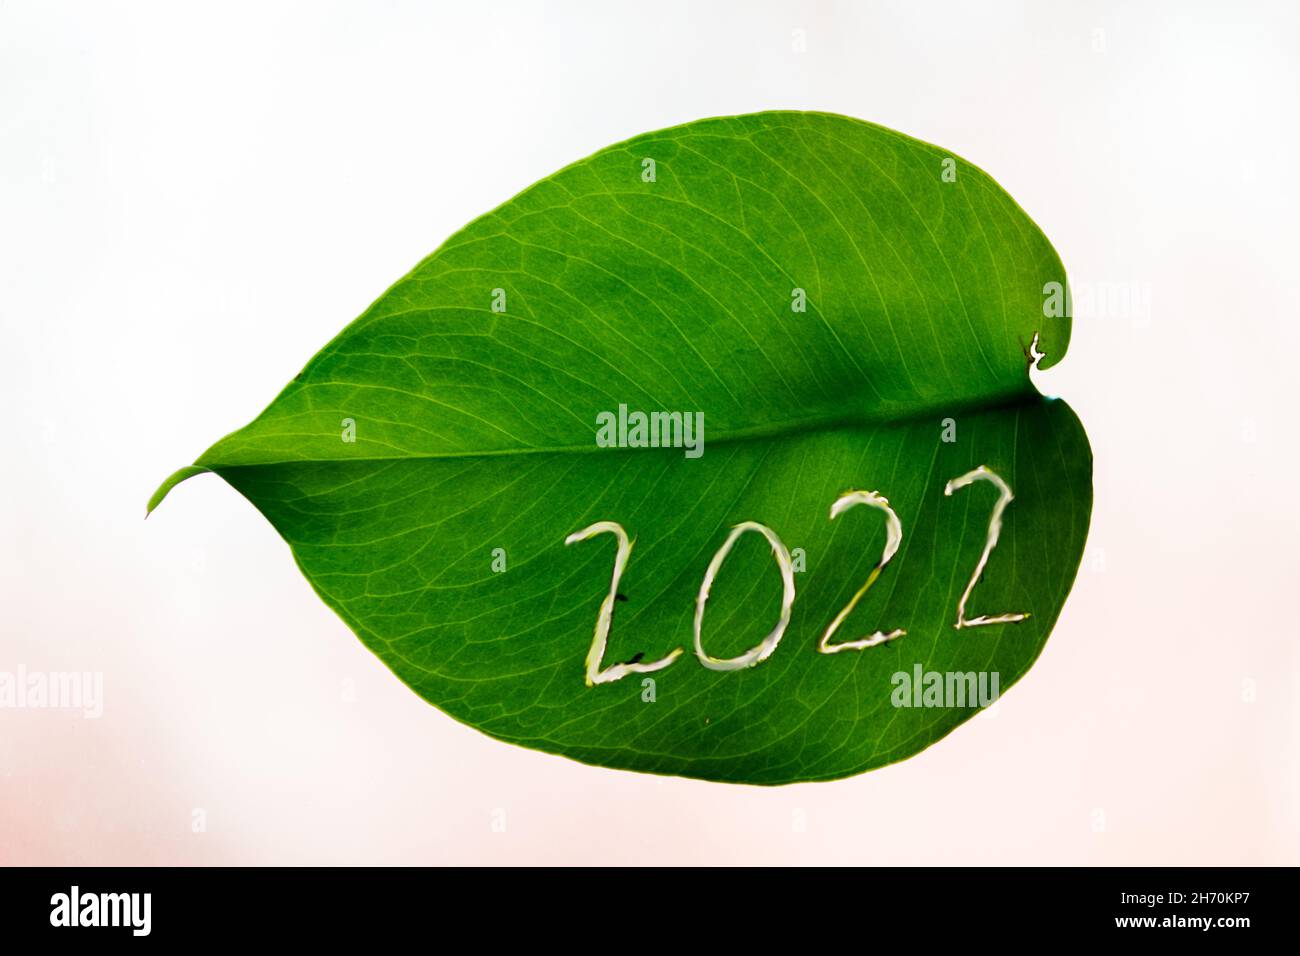 Numéro 2022.Nouvelle année.Le numéro 2022 est sculpté dans une feuille verte. Banque D'Images